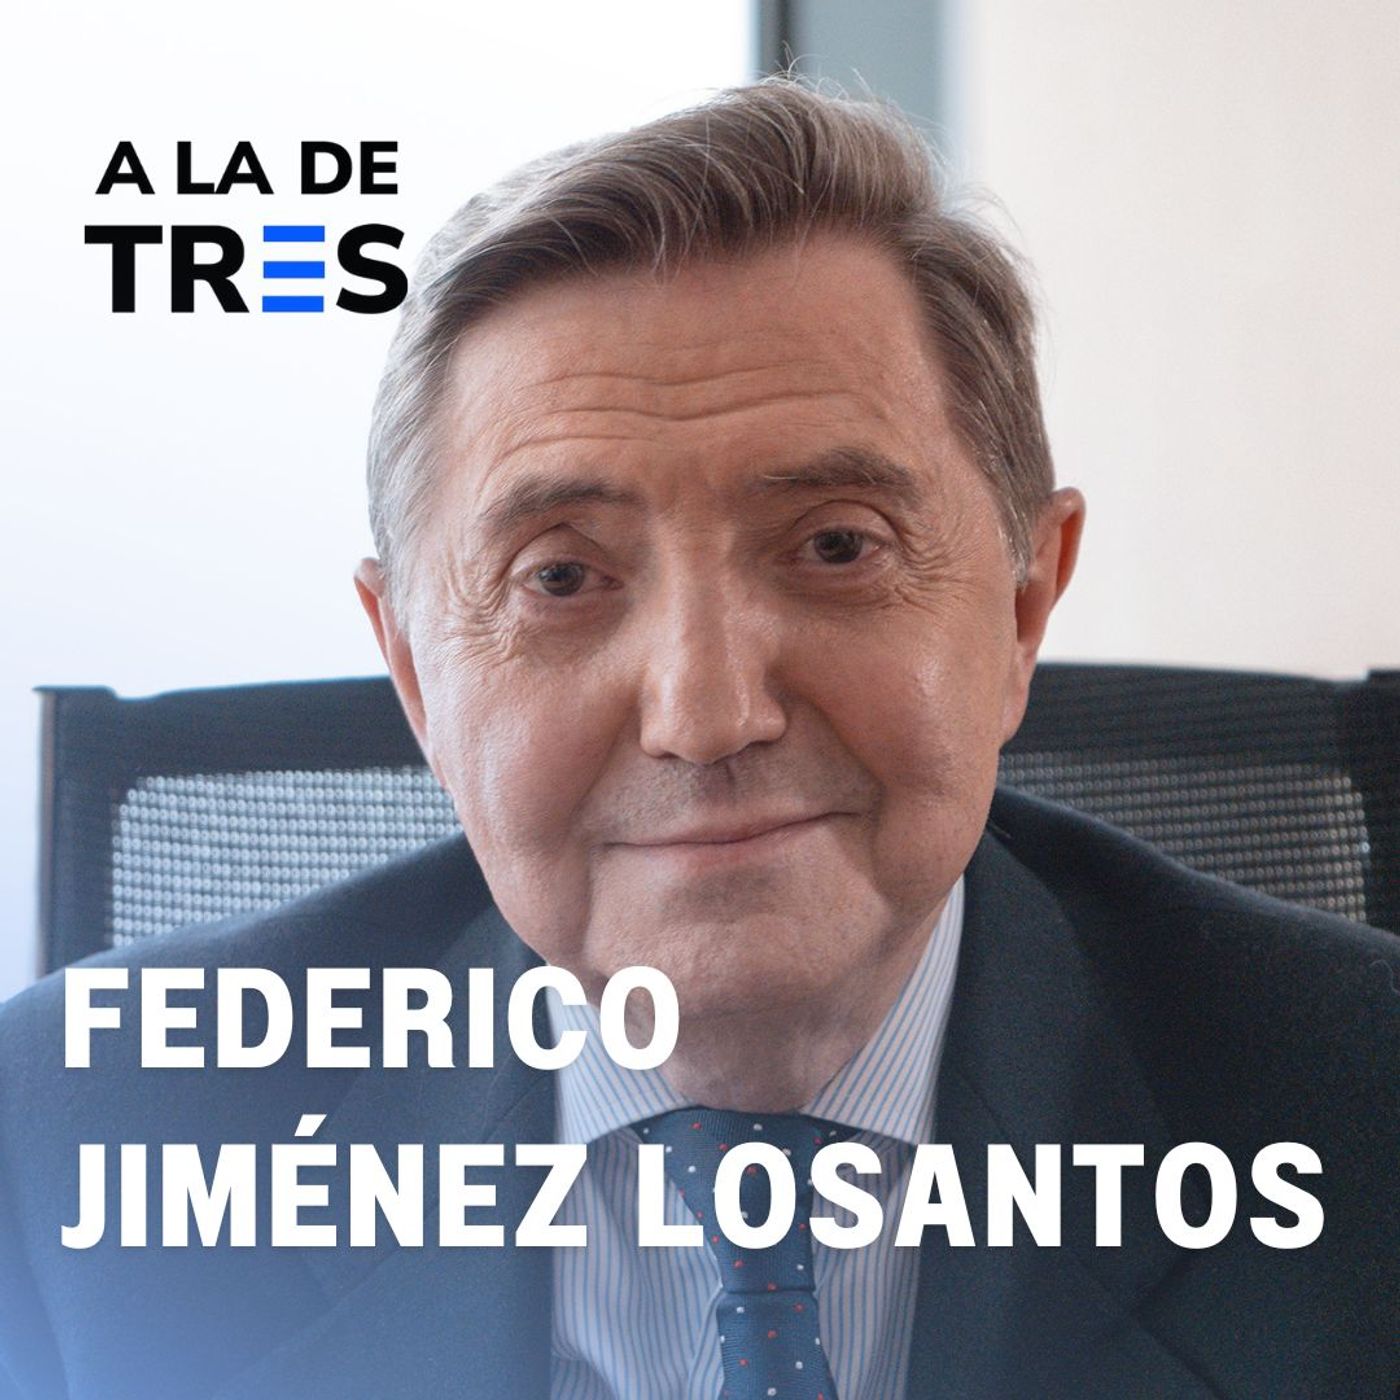 “Vamos hacia la DICTADURA de SÁNCHEZ” - Federico Jiménez Losantos | Aladetres #81